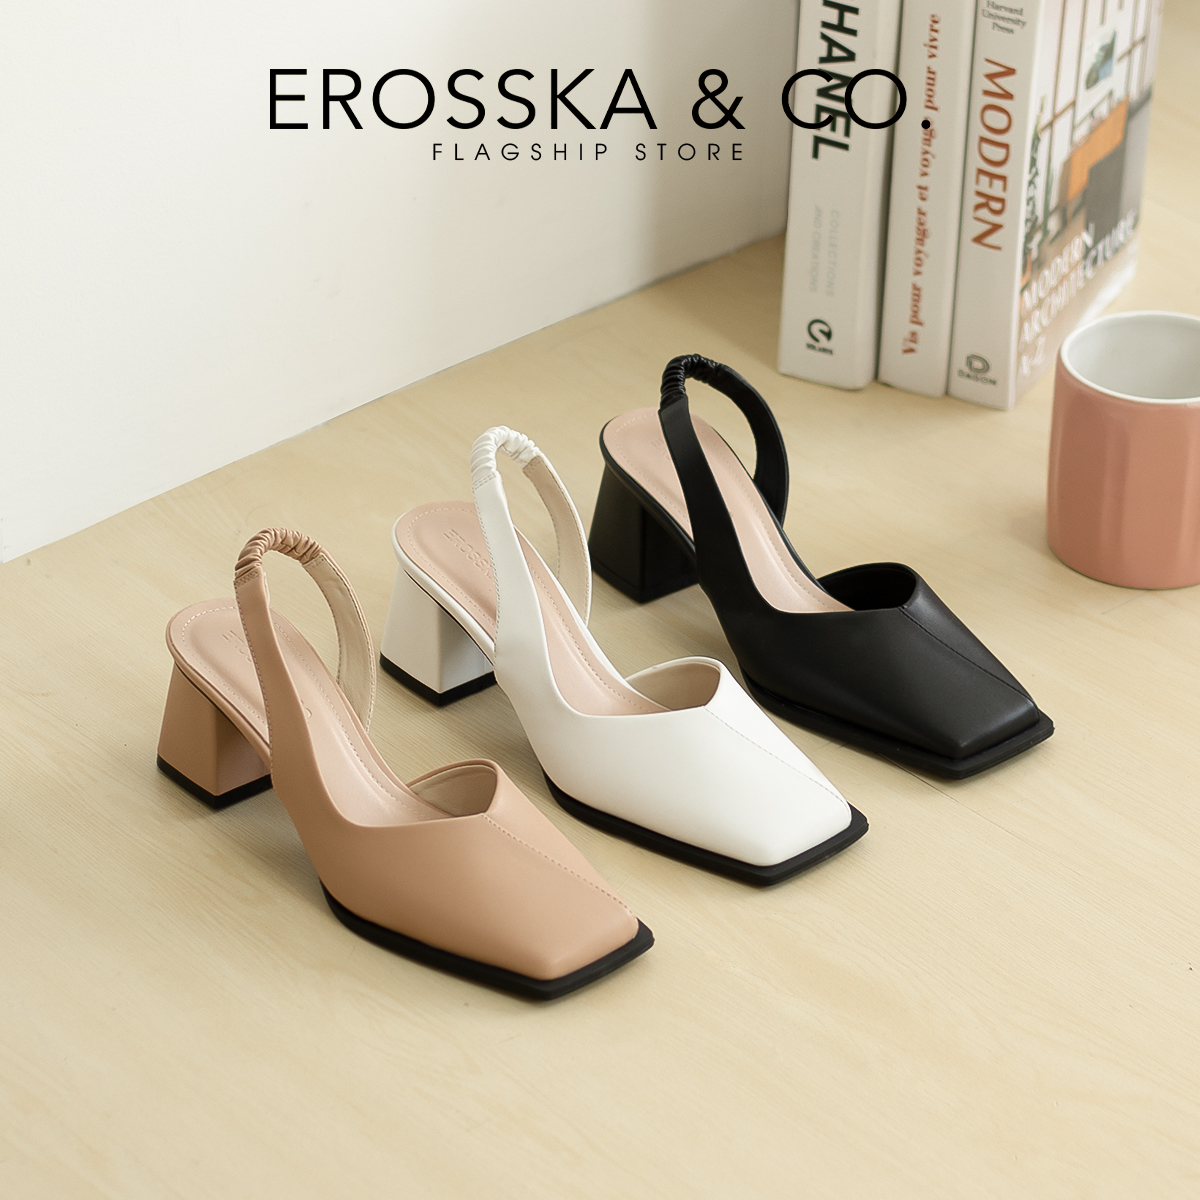 Erosska - Giày cao gót nữ mũi vuông dây quai mảnh nhún sau màu trắng cao 6cm - EL027